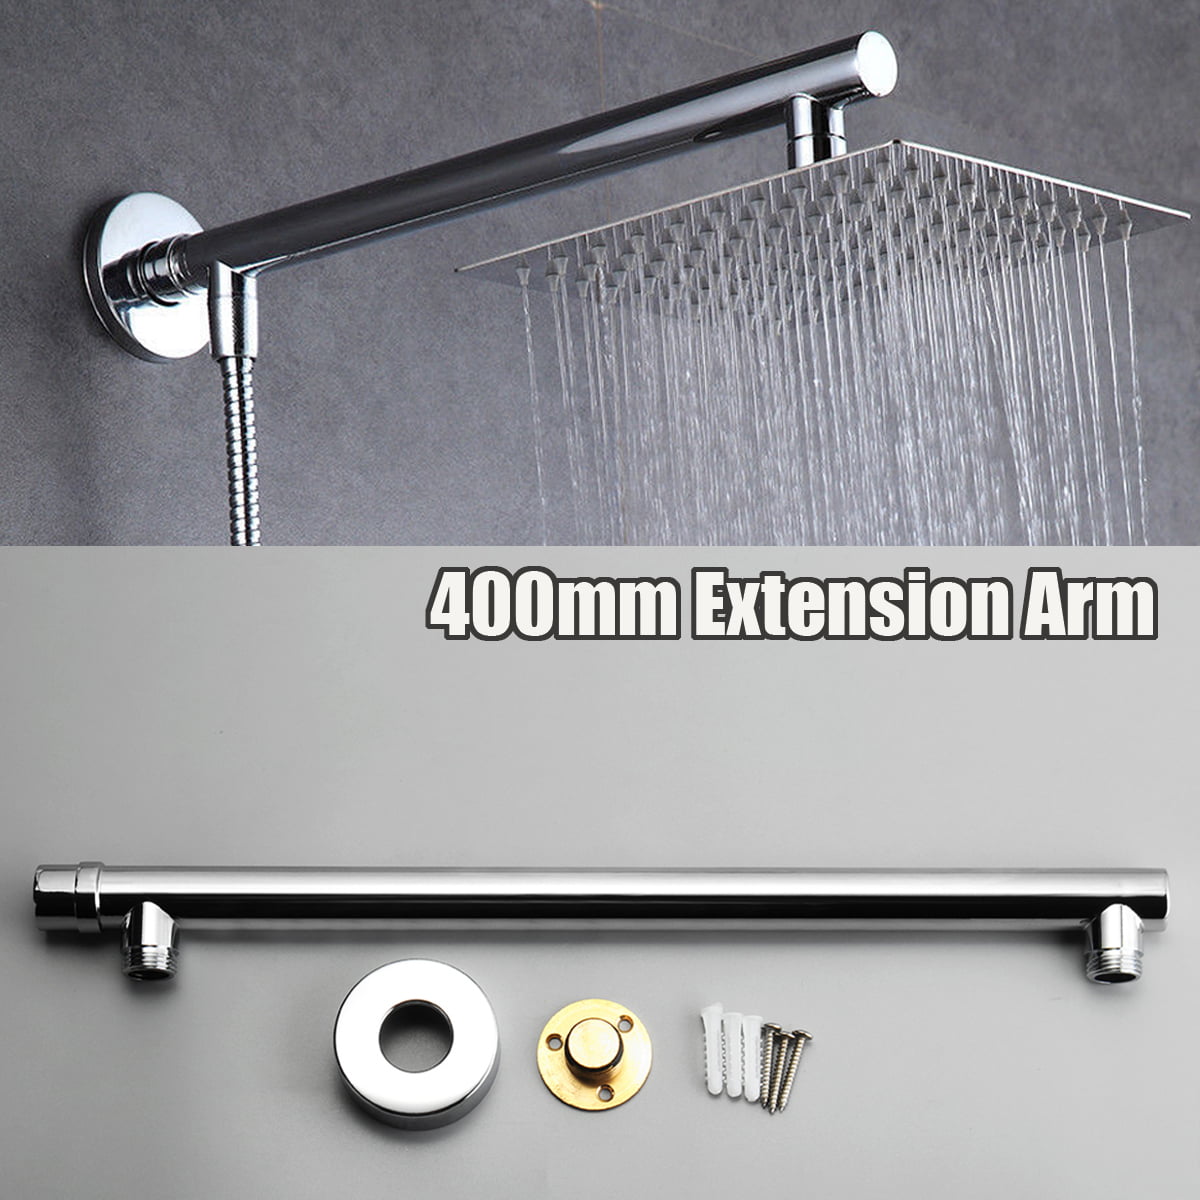 Shower Head Extension Arm JS Jackson Supplies 16" Assembled Length High Arc 